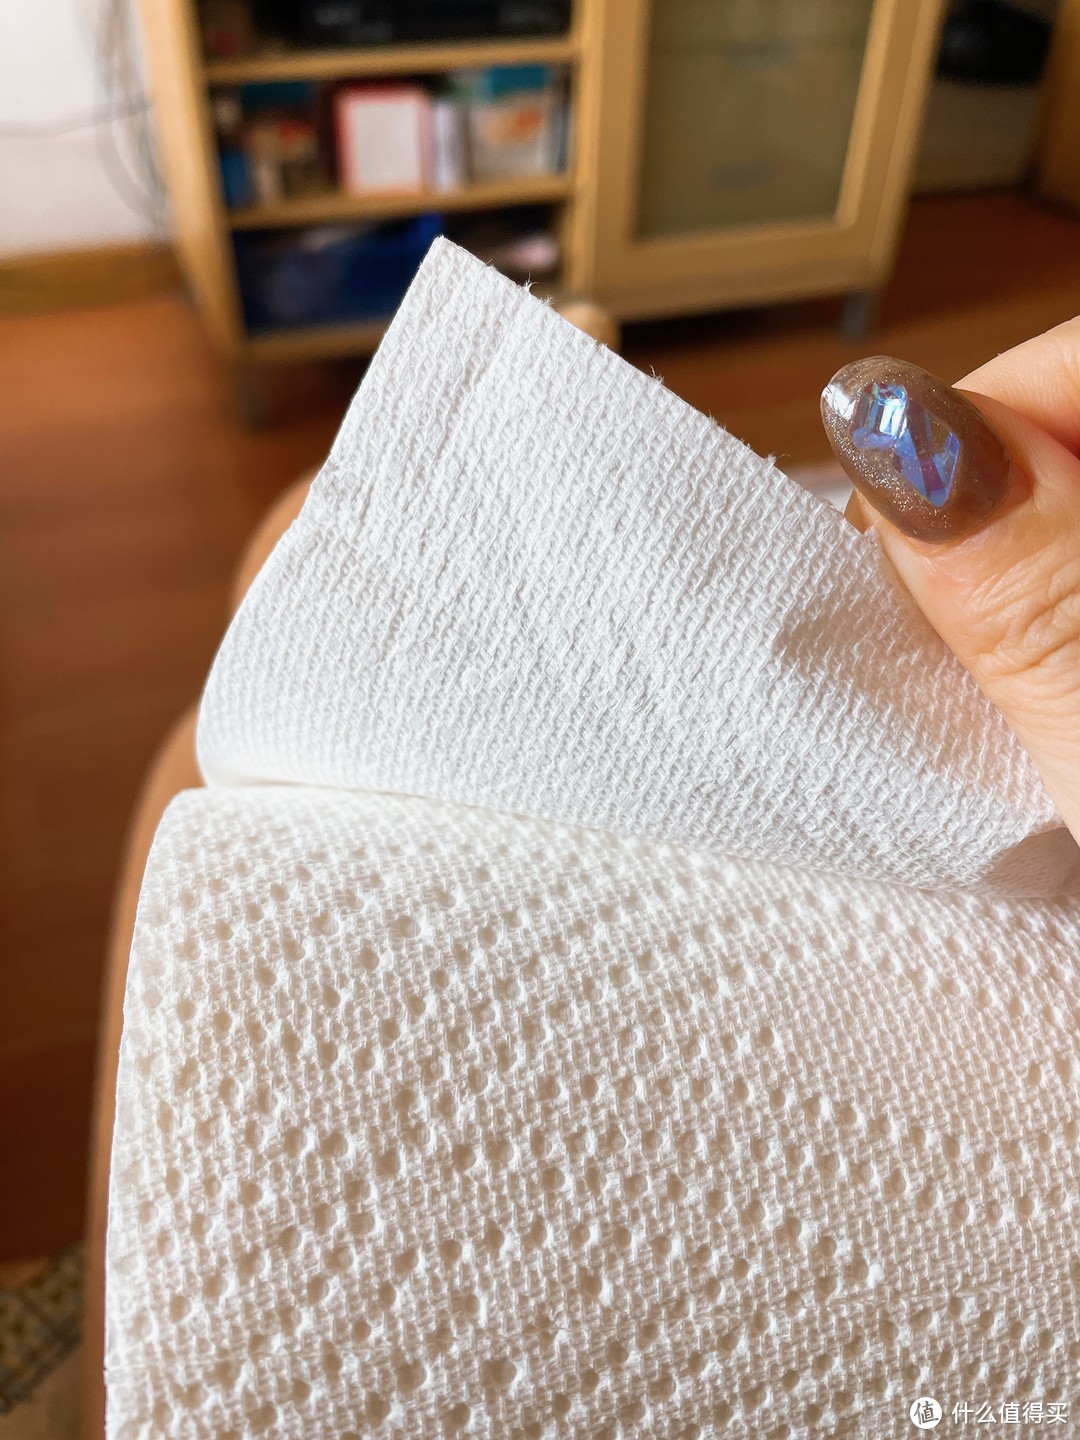 清洁好物这样选🧼厨房纸巾到底哪家的更好用？